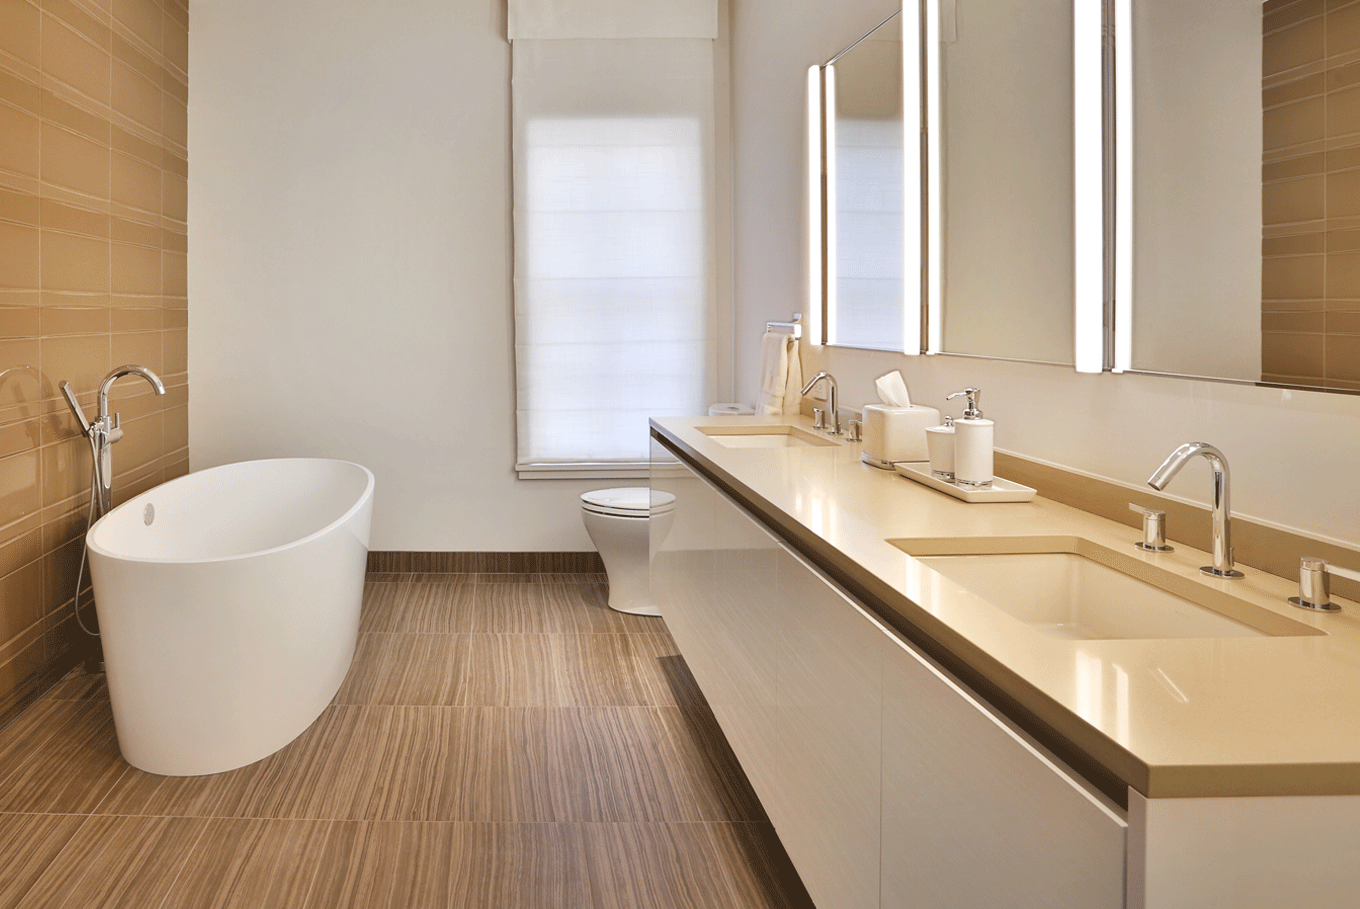 Modern sleek white glossy bathroom cabinets